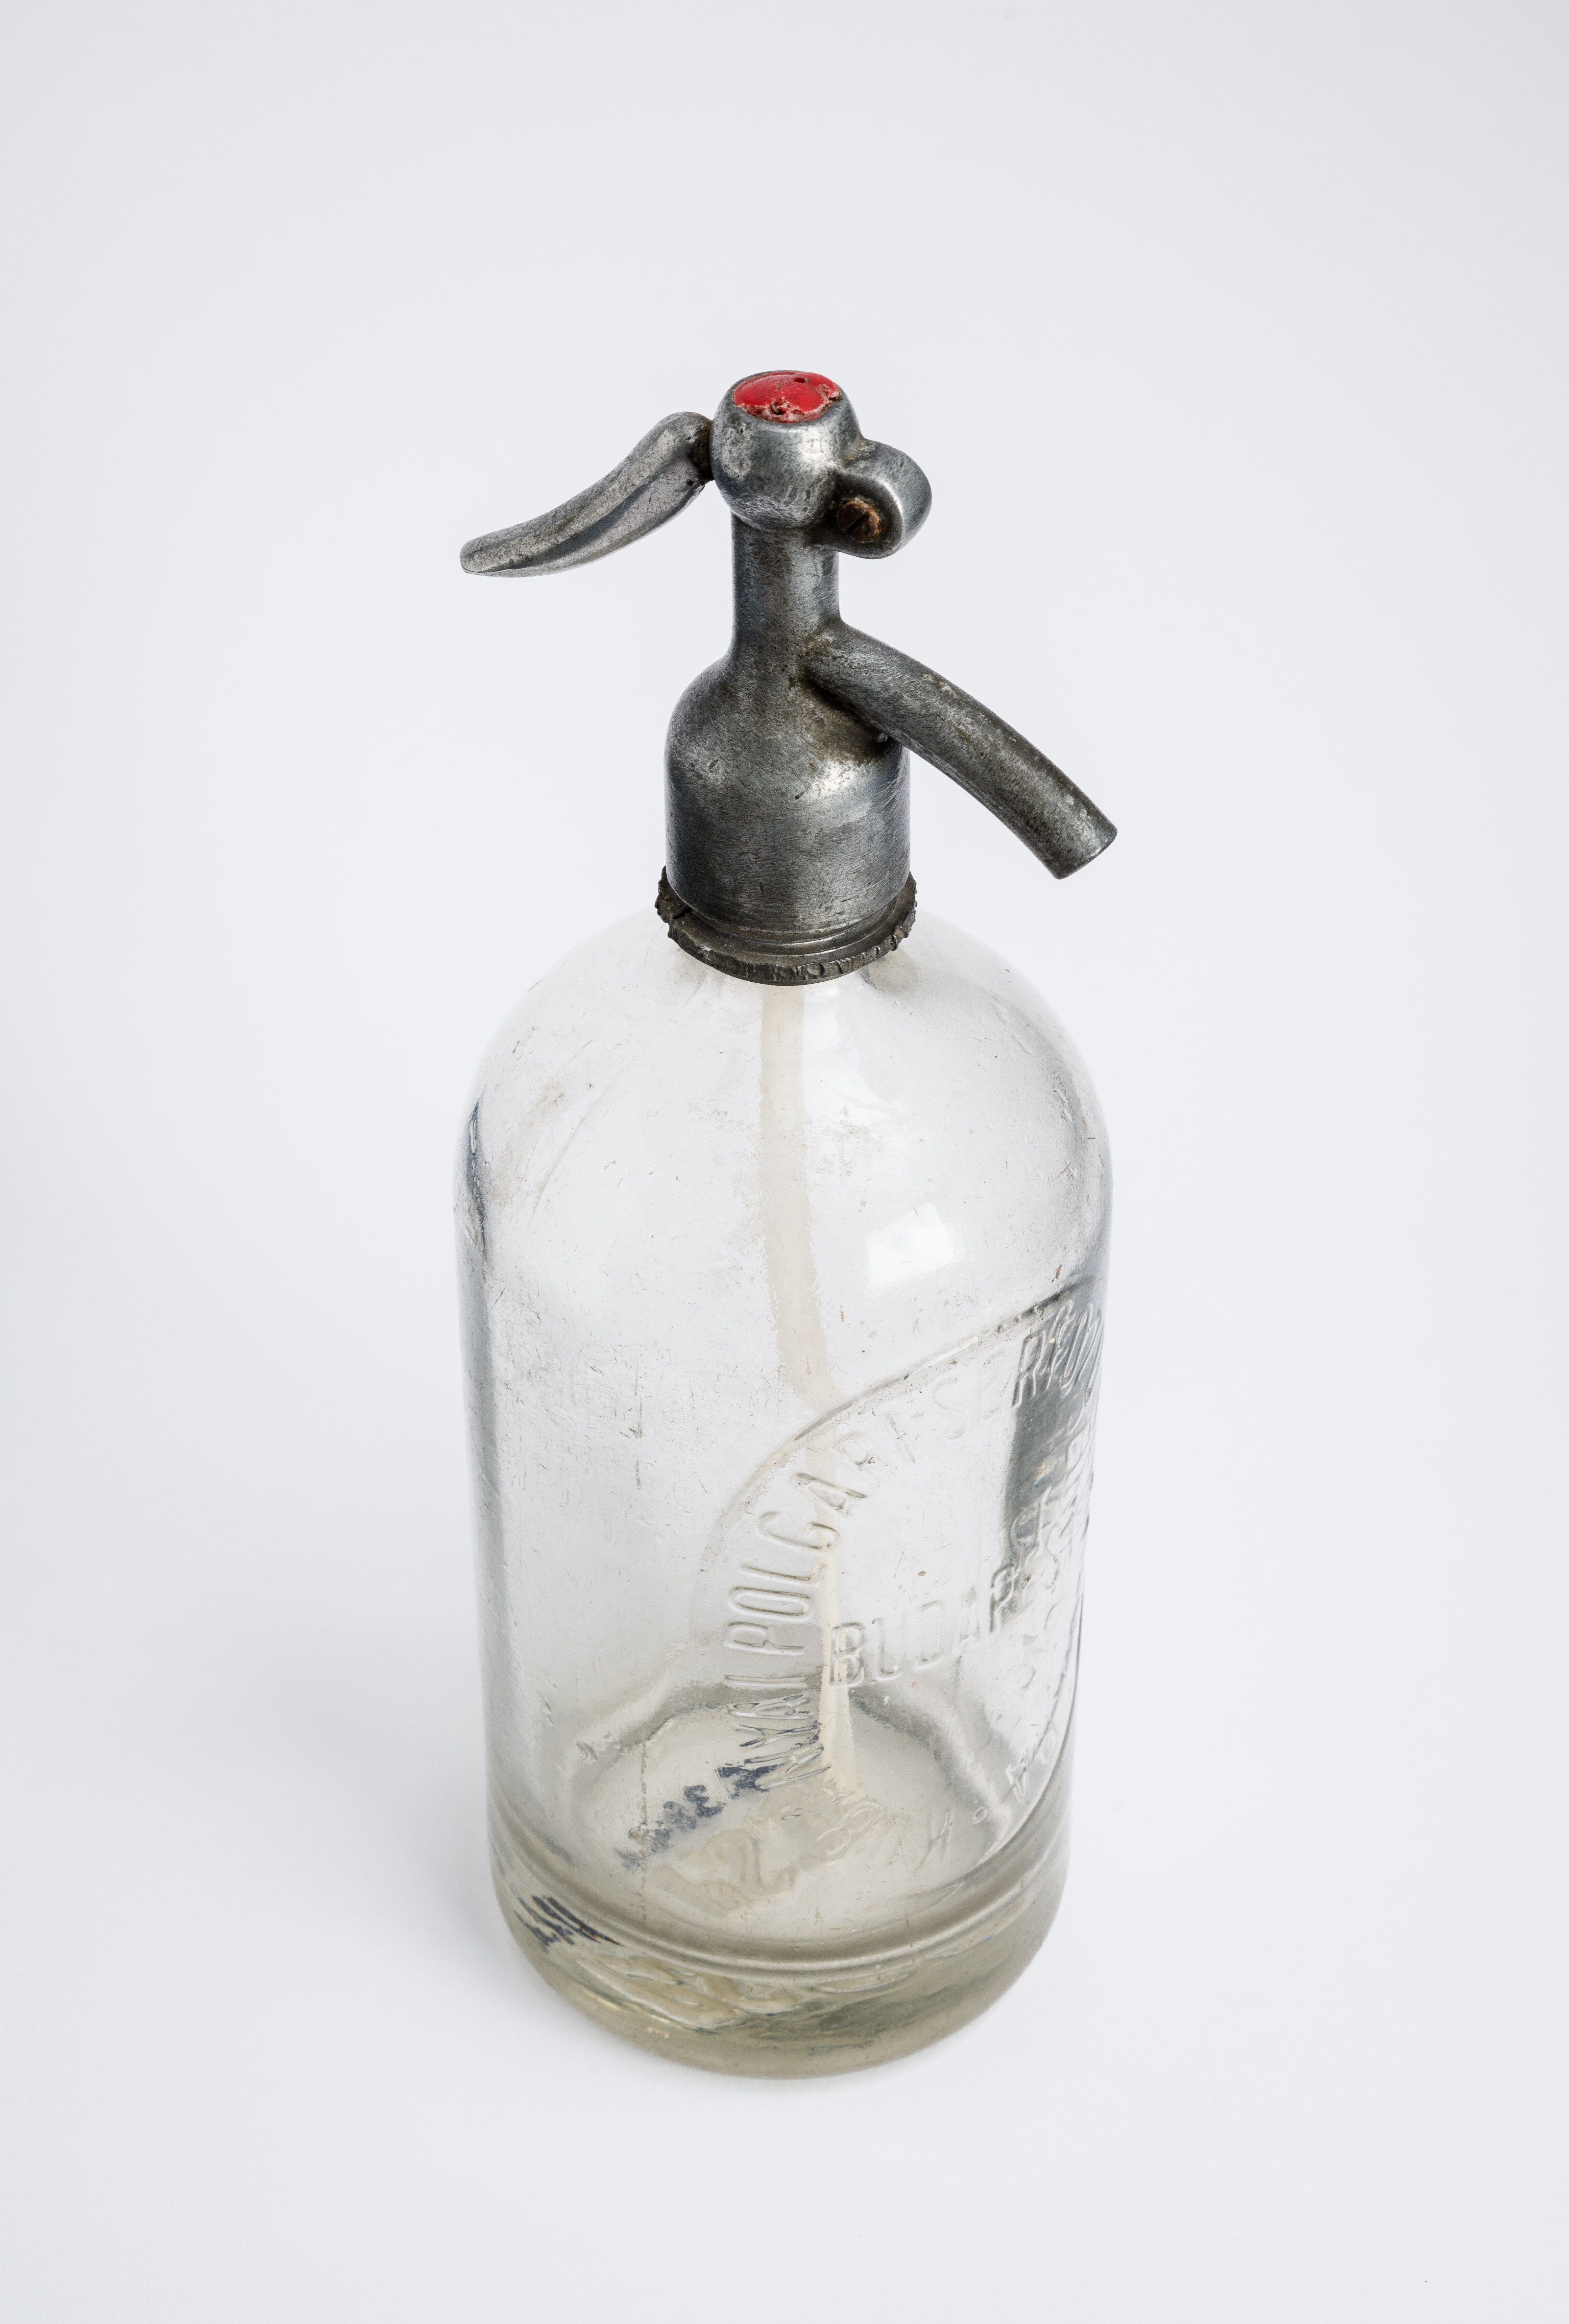 Szódásüveg; Siphonflasche; "Szódaflosn" (Bleyer Jakab Helytörténeti Gyűjtemény, Heimatmuseum CC BY-NC-SA)